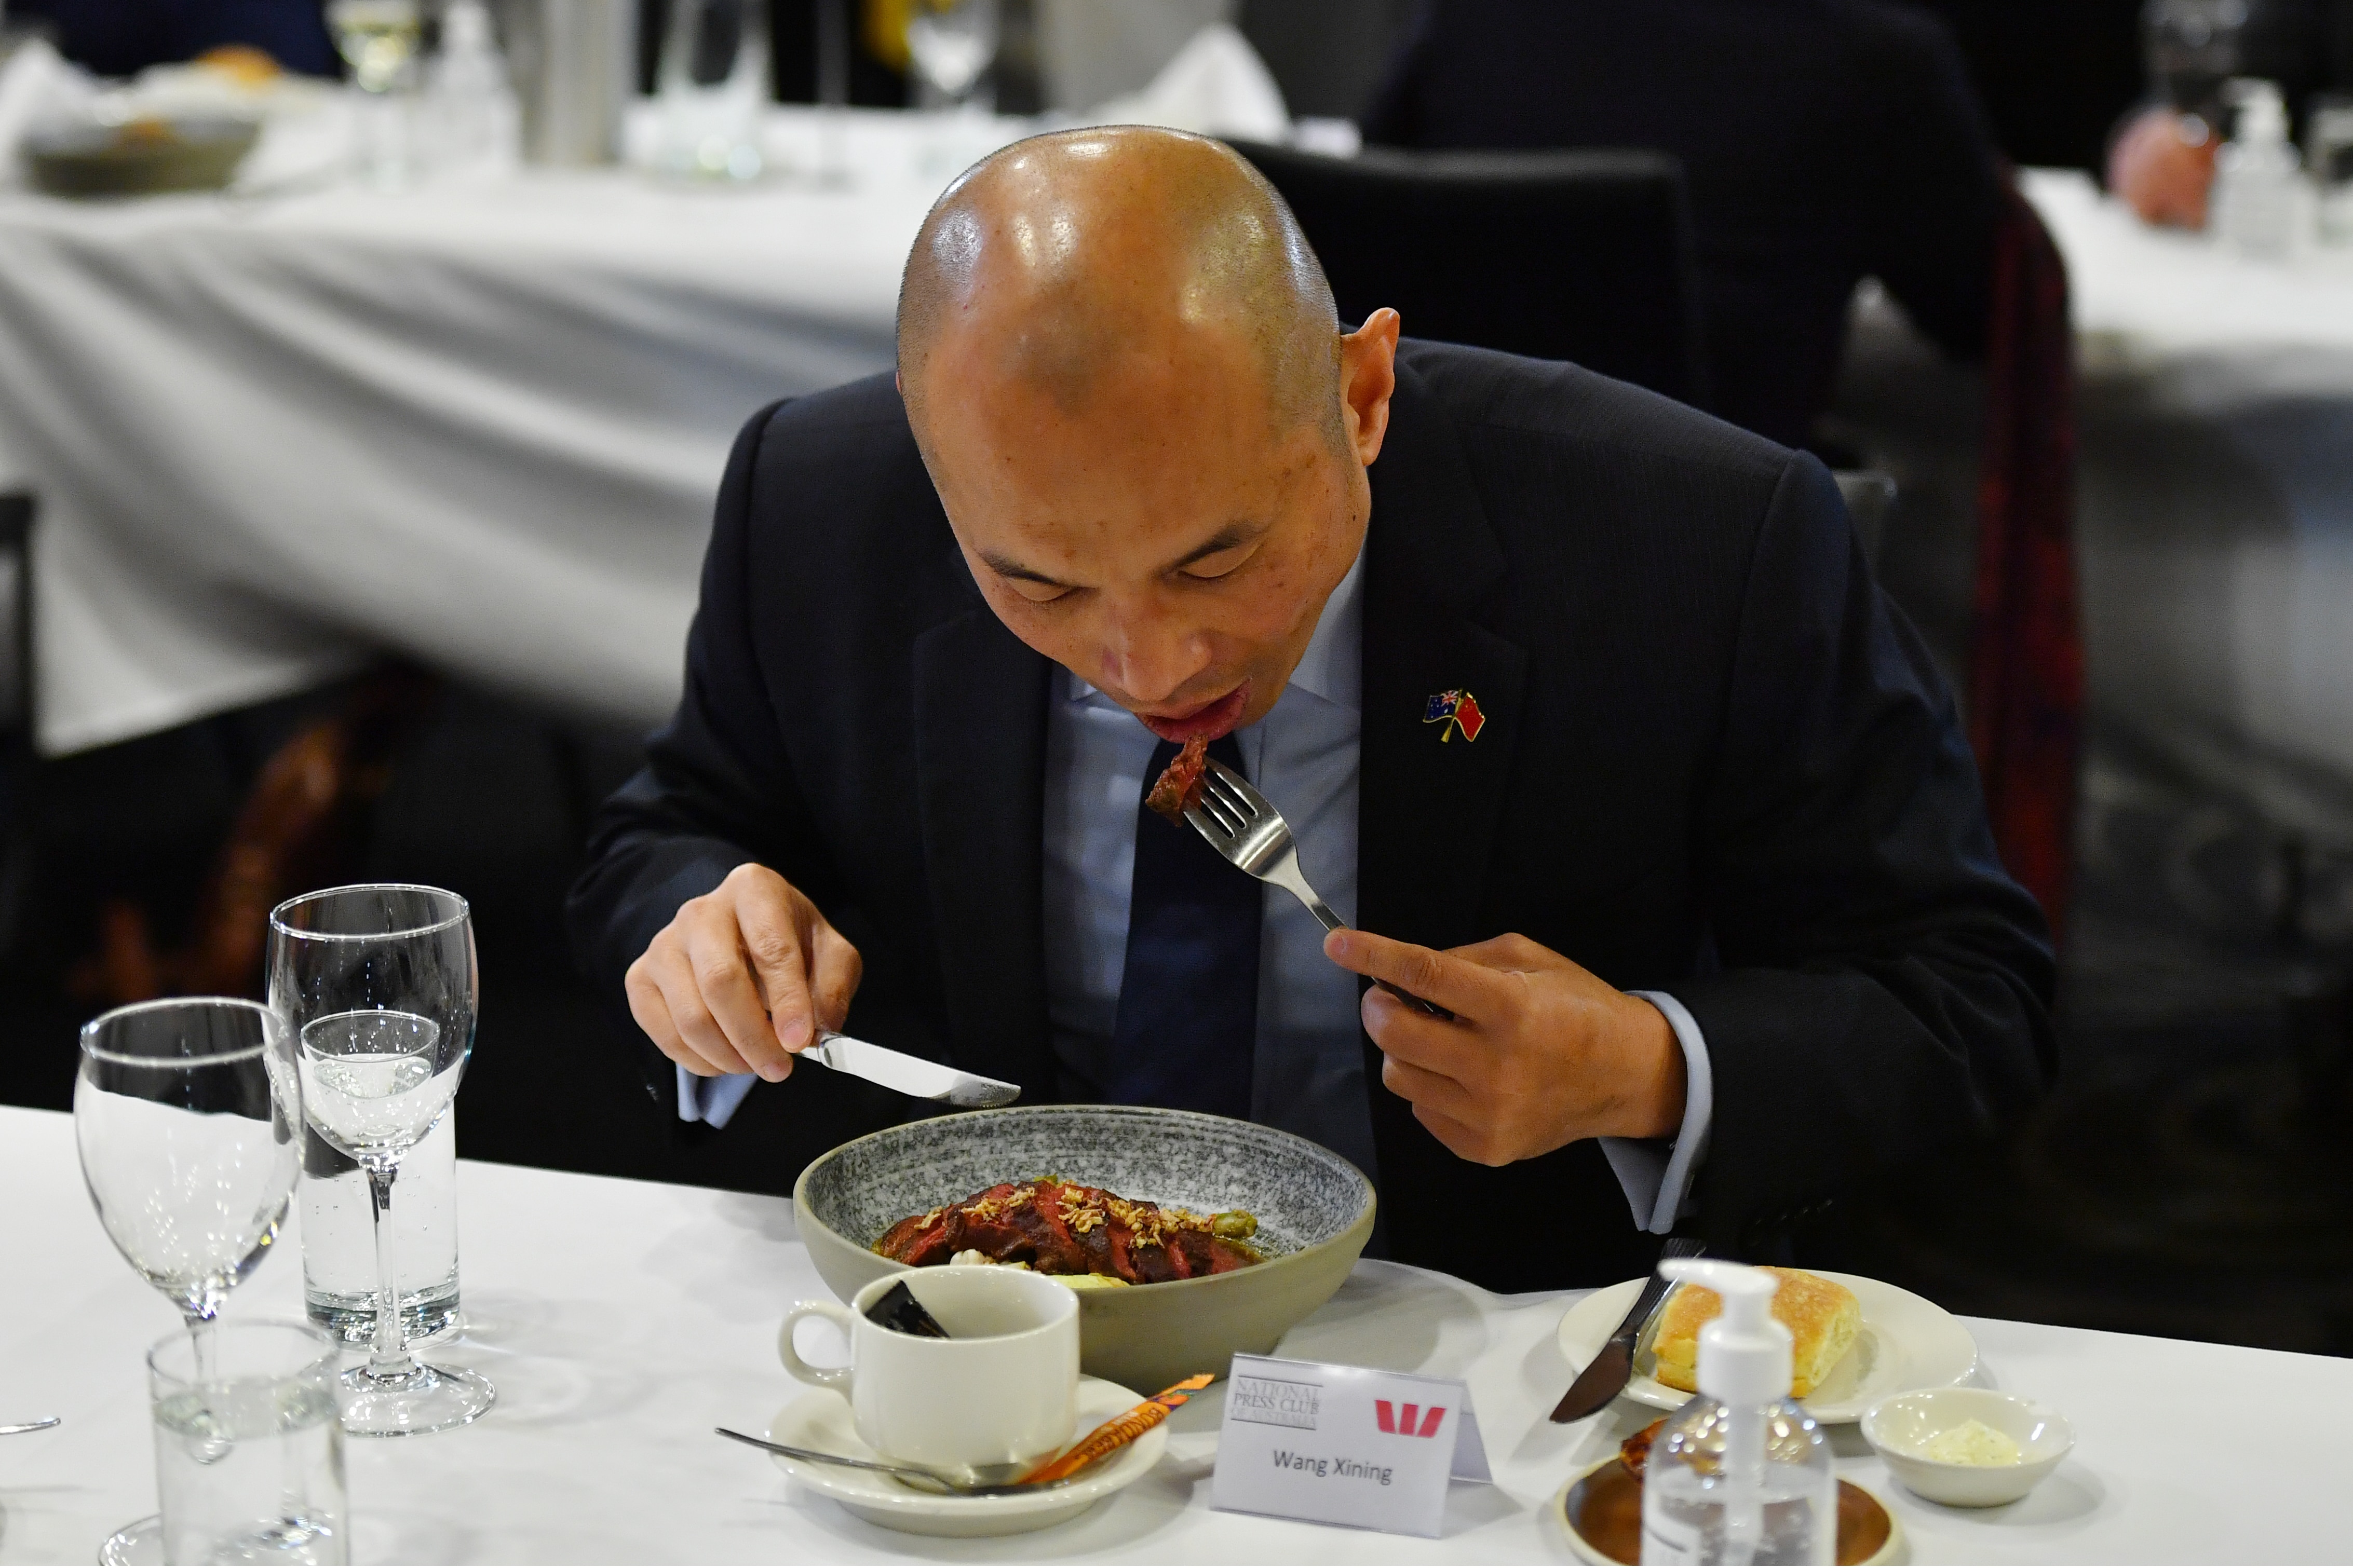 نائب رئيس بعثة السفارة الصينية في أستراليا وانغ شينينغ يأكل اللحم البقري في نادي الصحافة الوطني في كانبيرا.